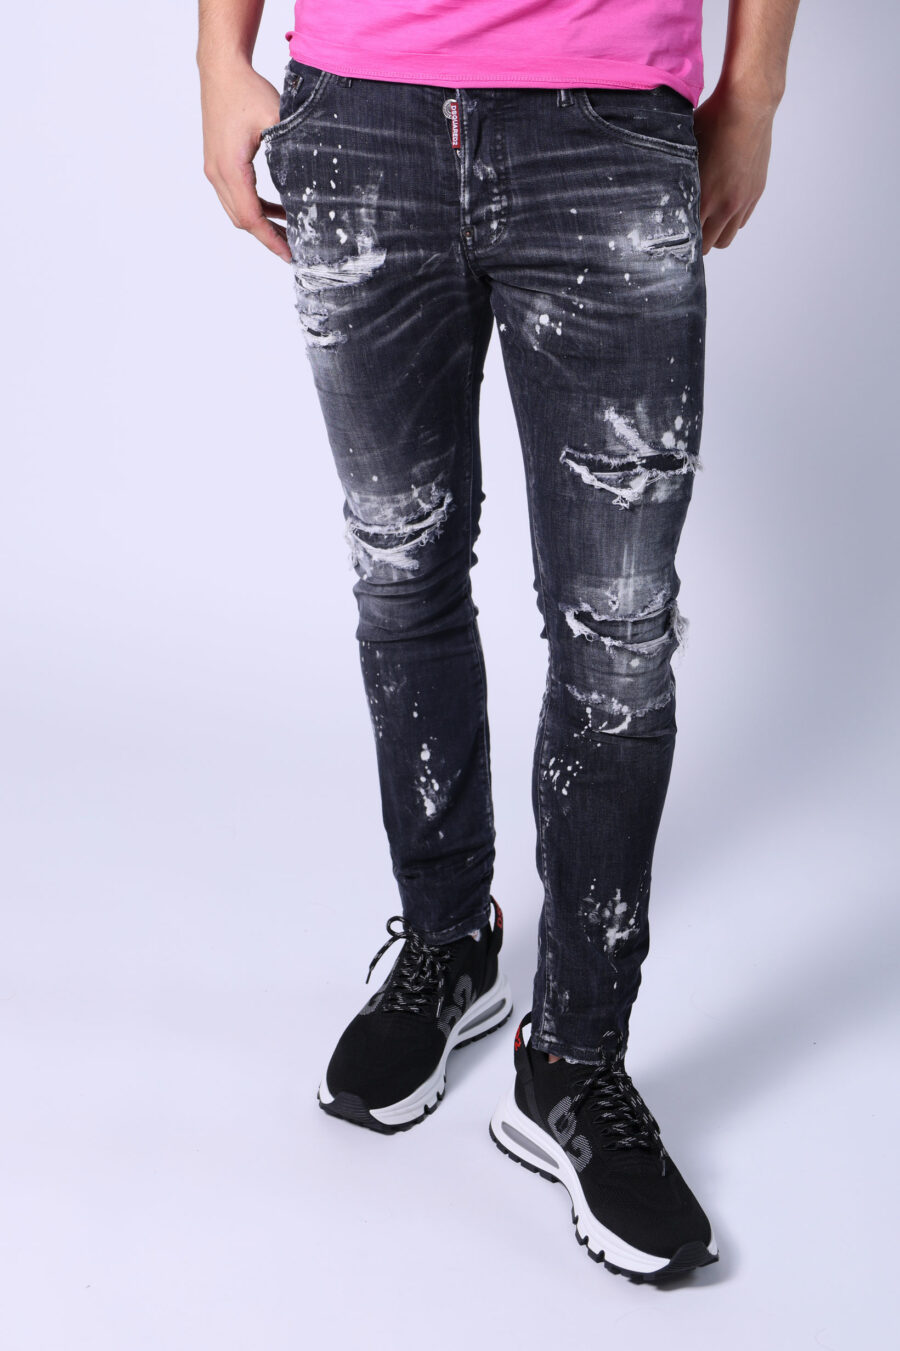 Pantalon skater en jean noir usé et déchiré - Untitled Catalog 05546